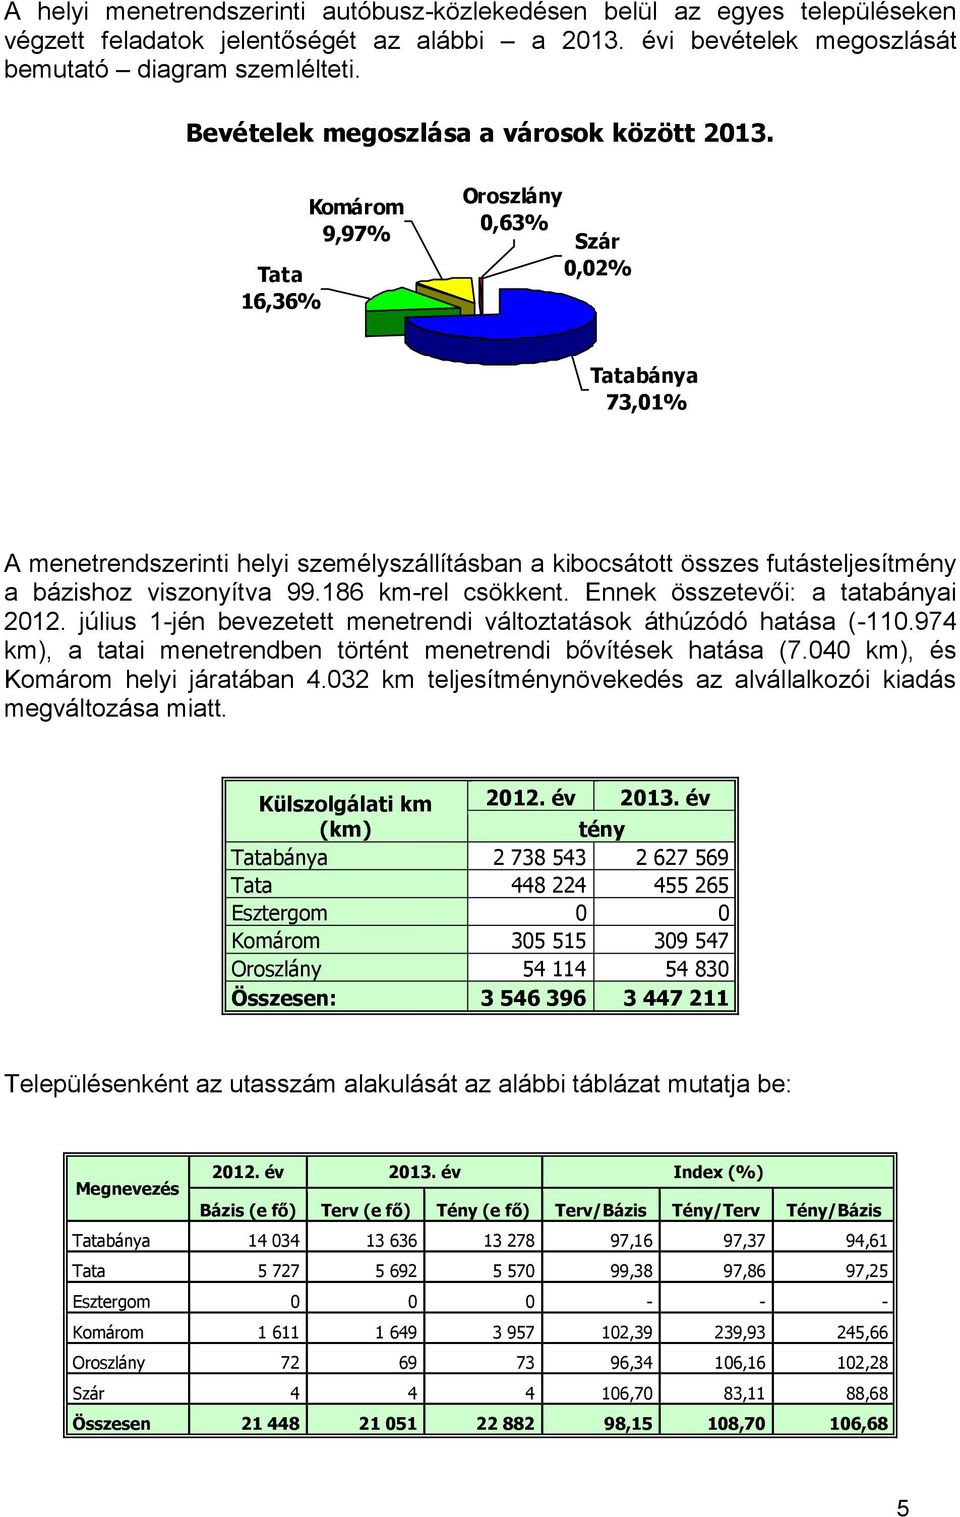 Tata 16,36% Komárom 9,97% Oroszlány 0,63% Szár 0,02% Tatabánya 73,01% A menetrendszerinti helyi személyszállításban a kibocsátott összes futásteljesítmény a bázishoz viszonyítva 99.